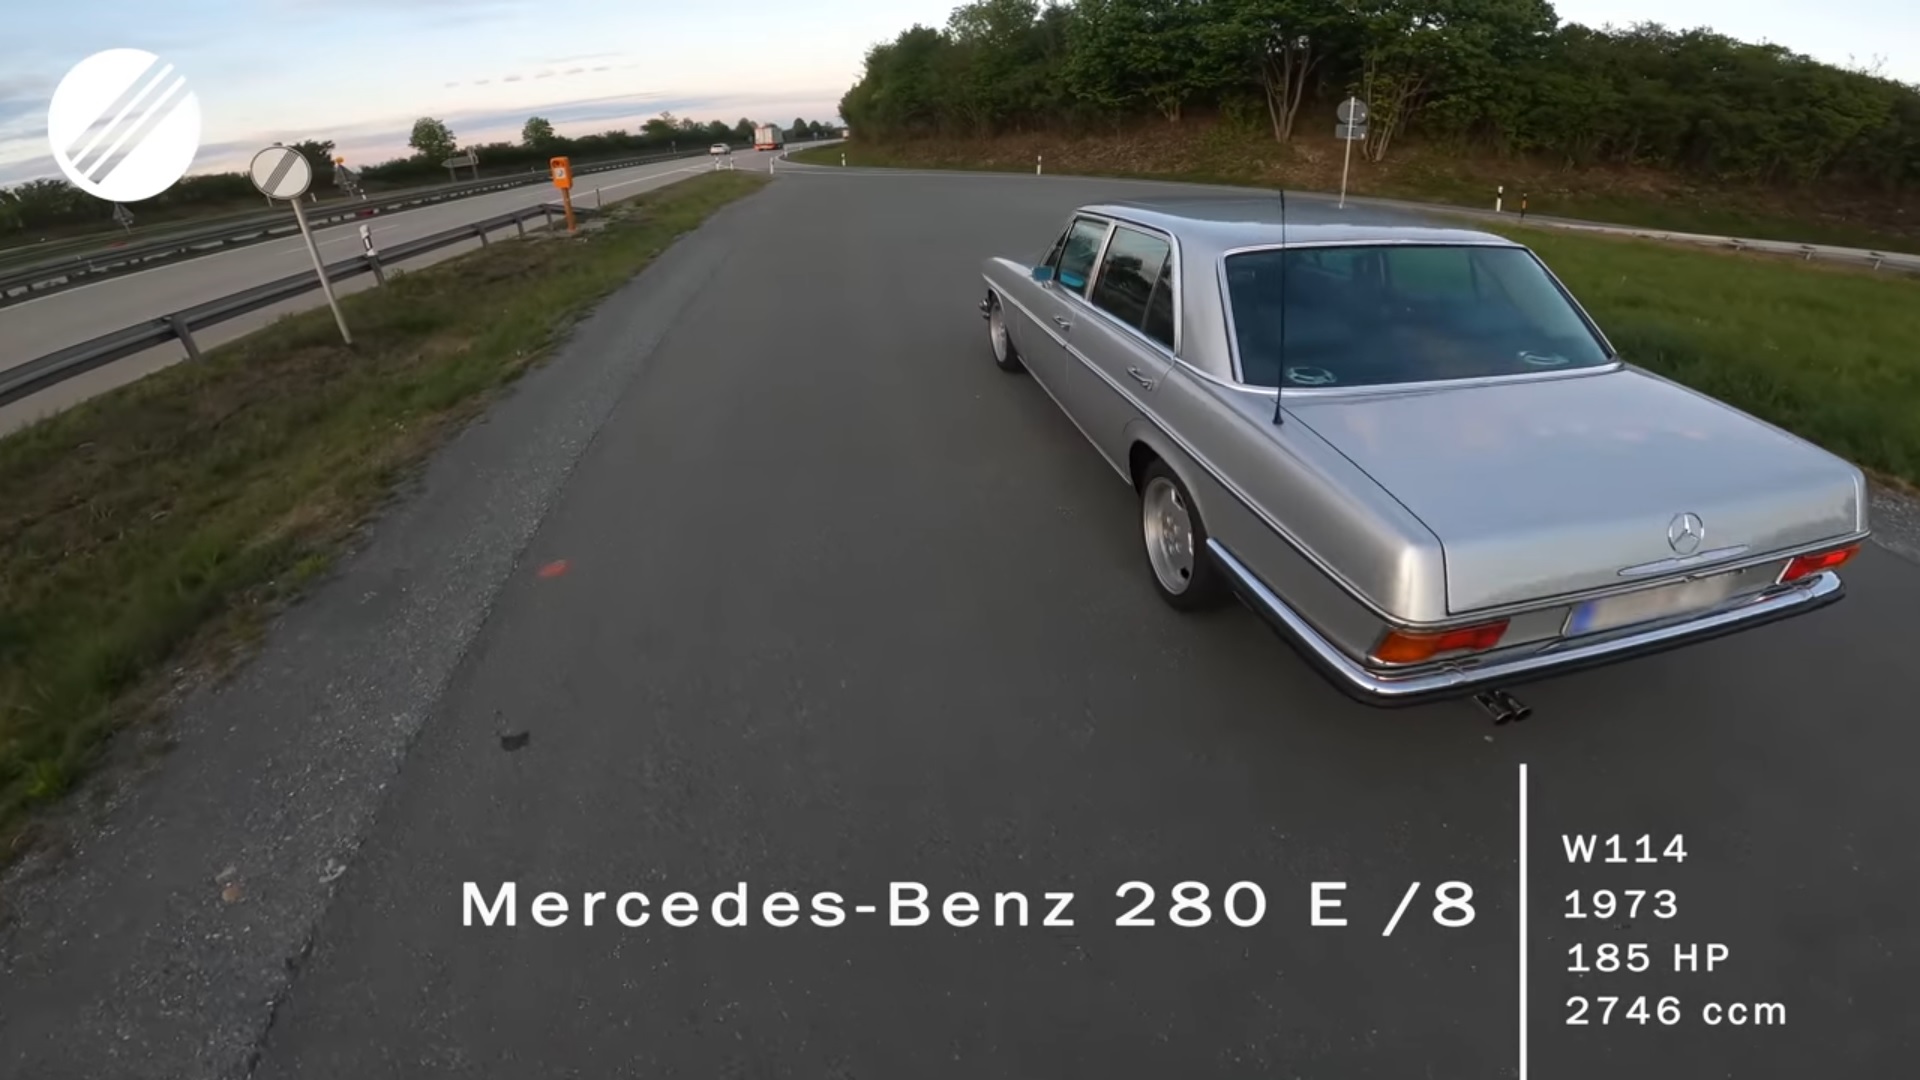 Mercedes-Benz 1973 280 E /8 W114 - Akcelerácia 0-220 km/h po 47-rokoch!